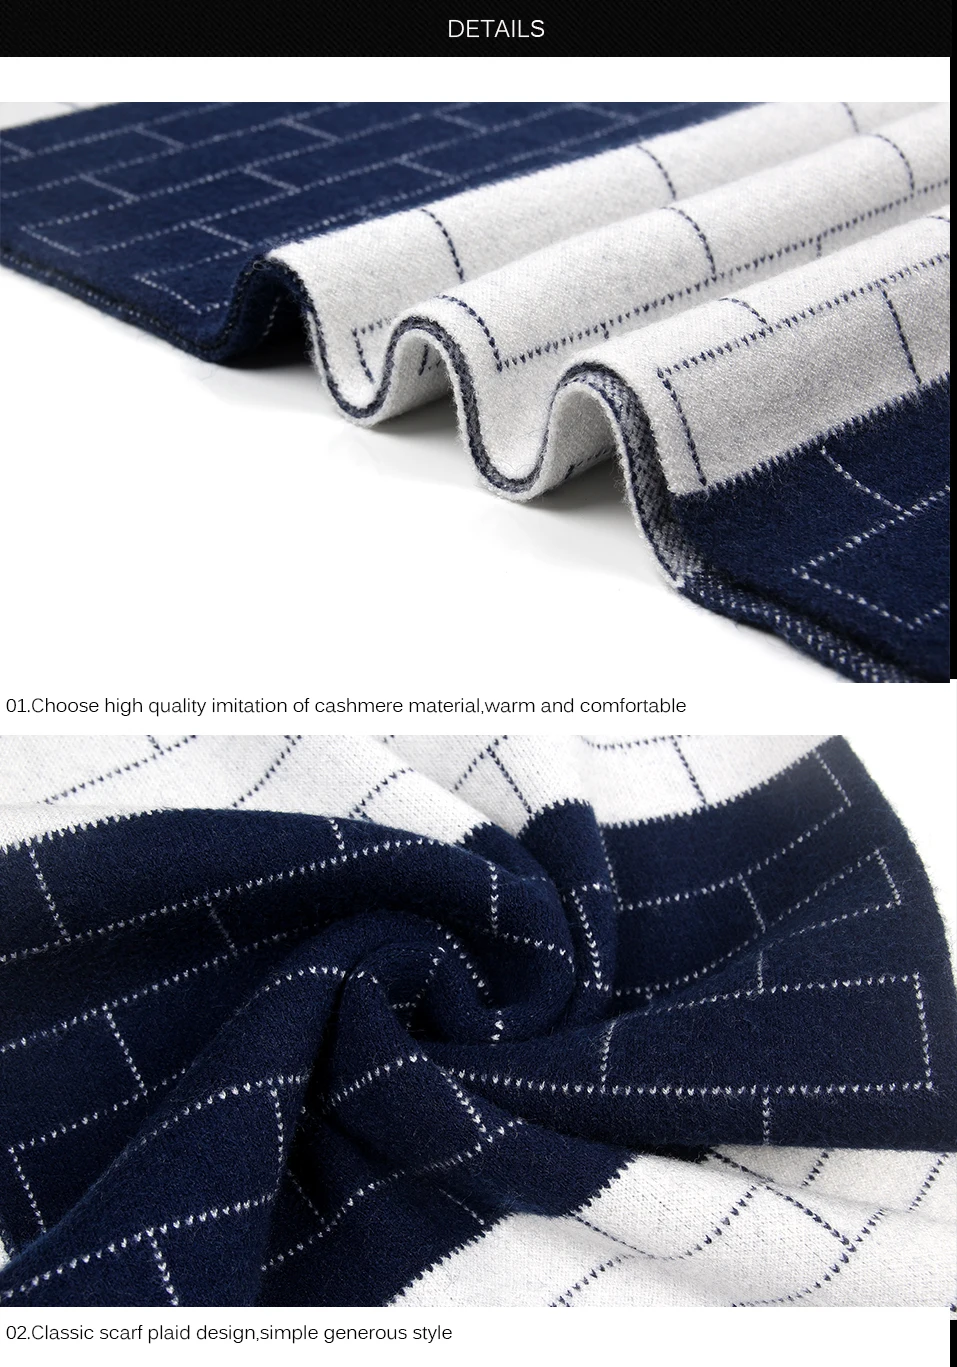 FS Новые дизайн плед для мужчин шарф длинный теплый бизнес зима шарфы для женщин Элитный бренд кашемир пашмины черный, серый цвет